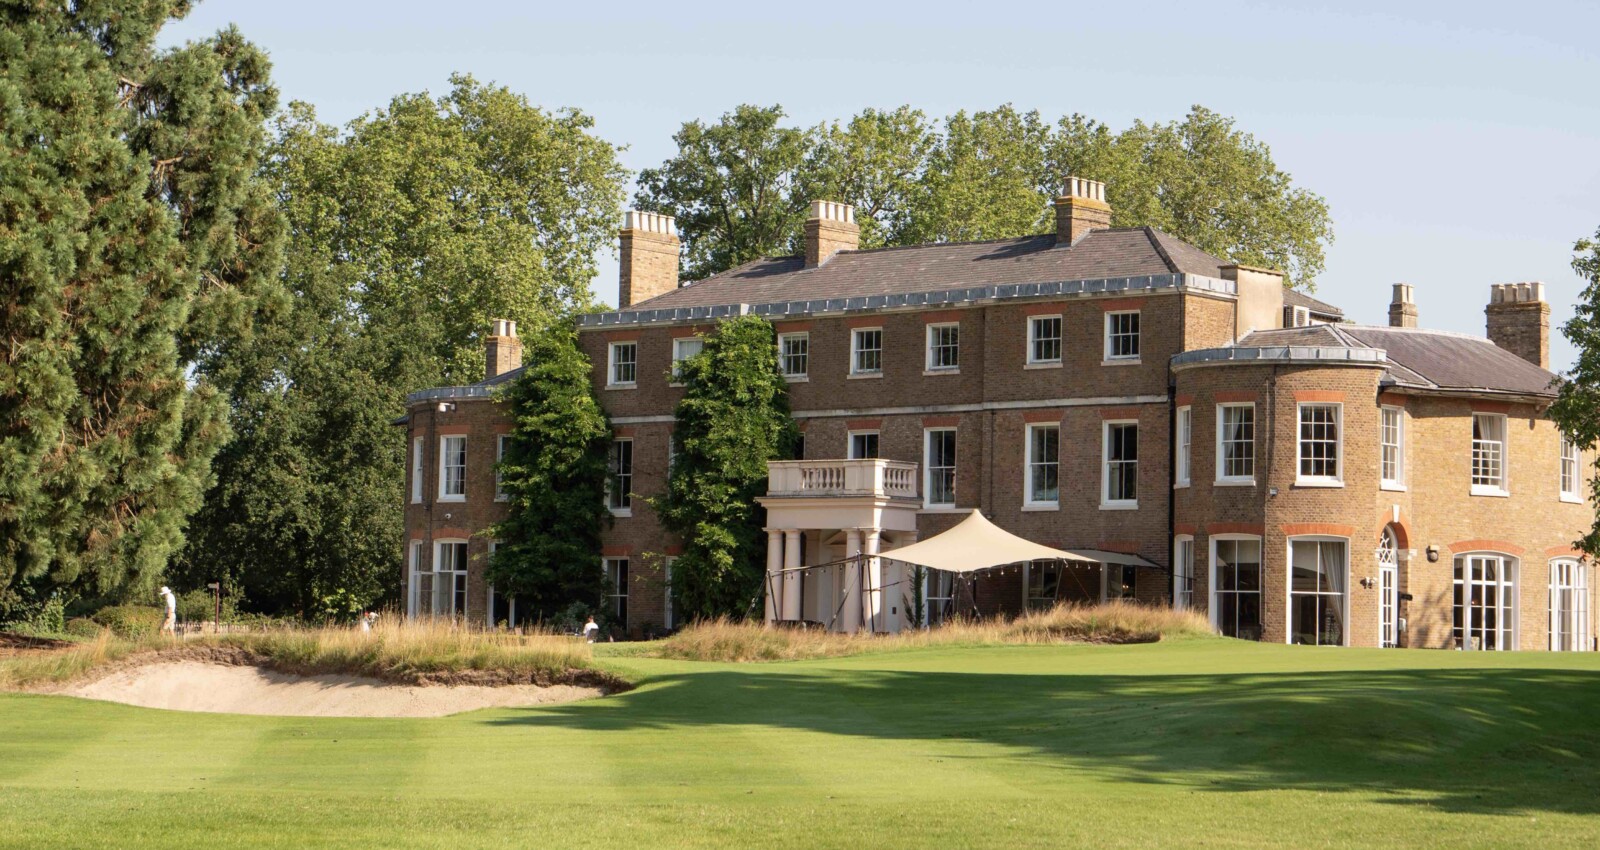 Buckinghamshire presentará una renovación de su casa club por valor de varios millones de libras - Golf News | Revista de golf